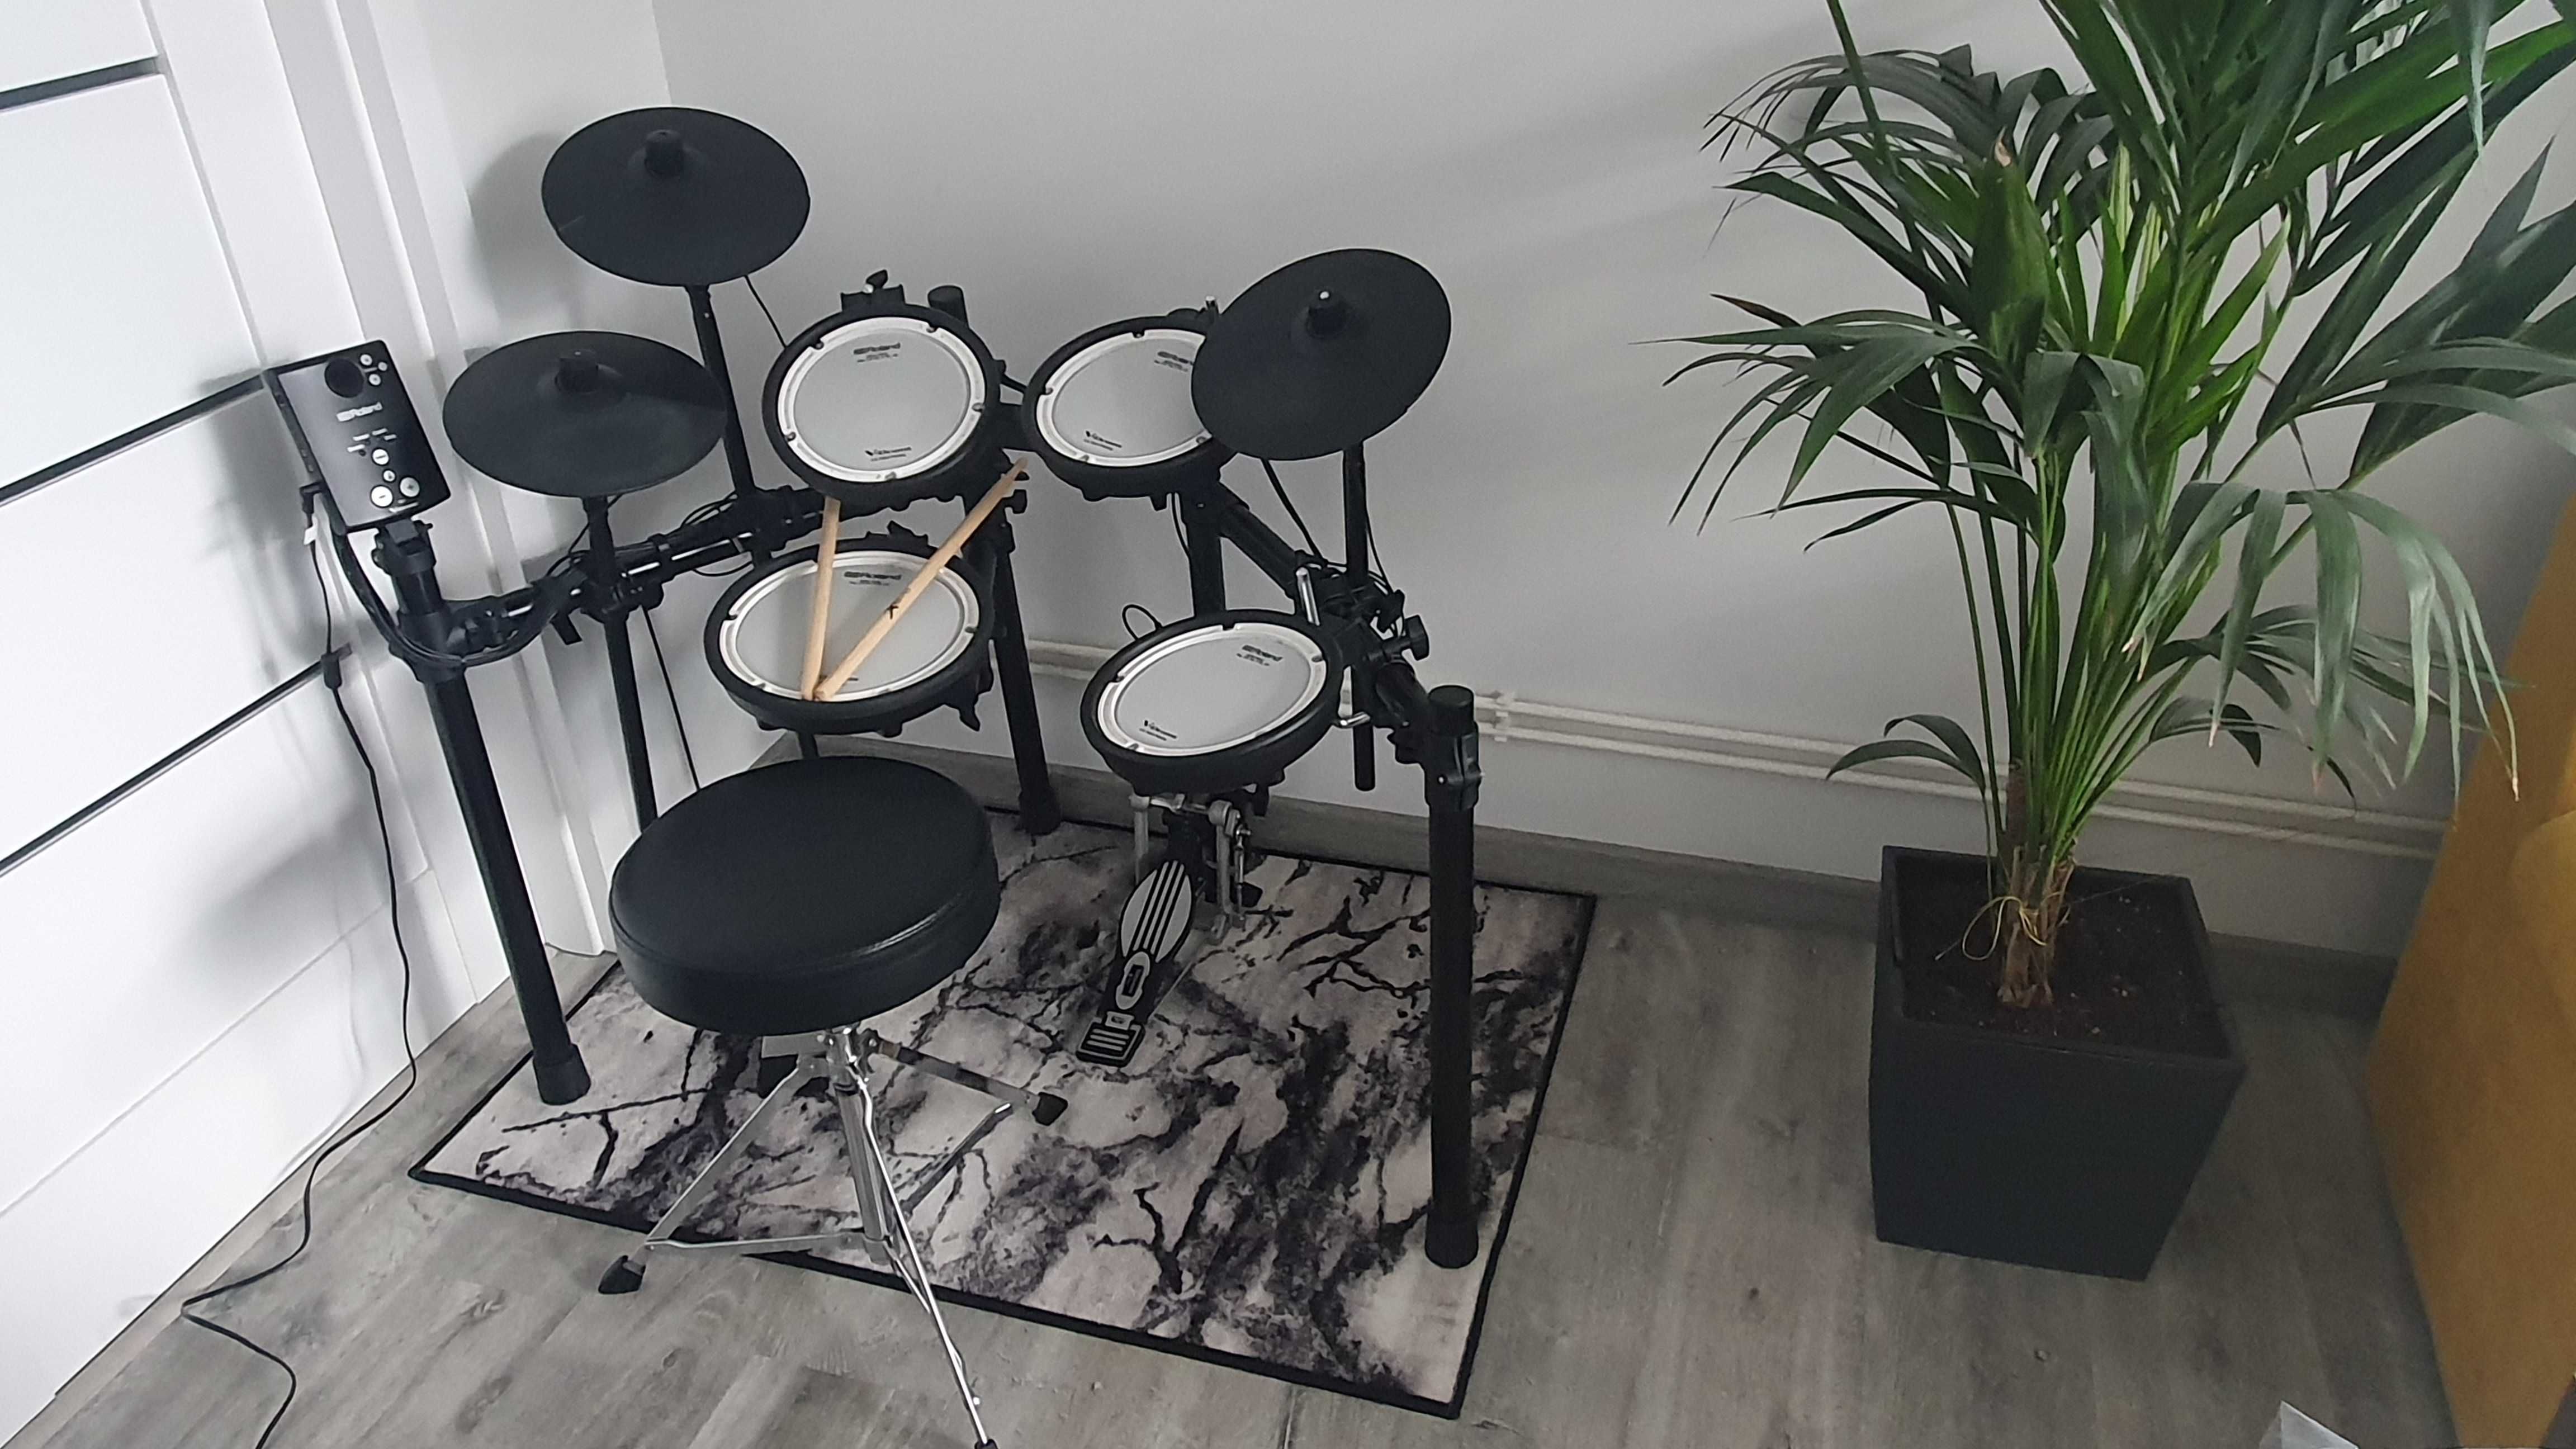 Perkusja elektroniczna Roland TD-1DMK + stołek perkusyjny + dywan